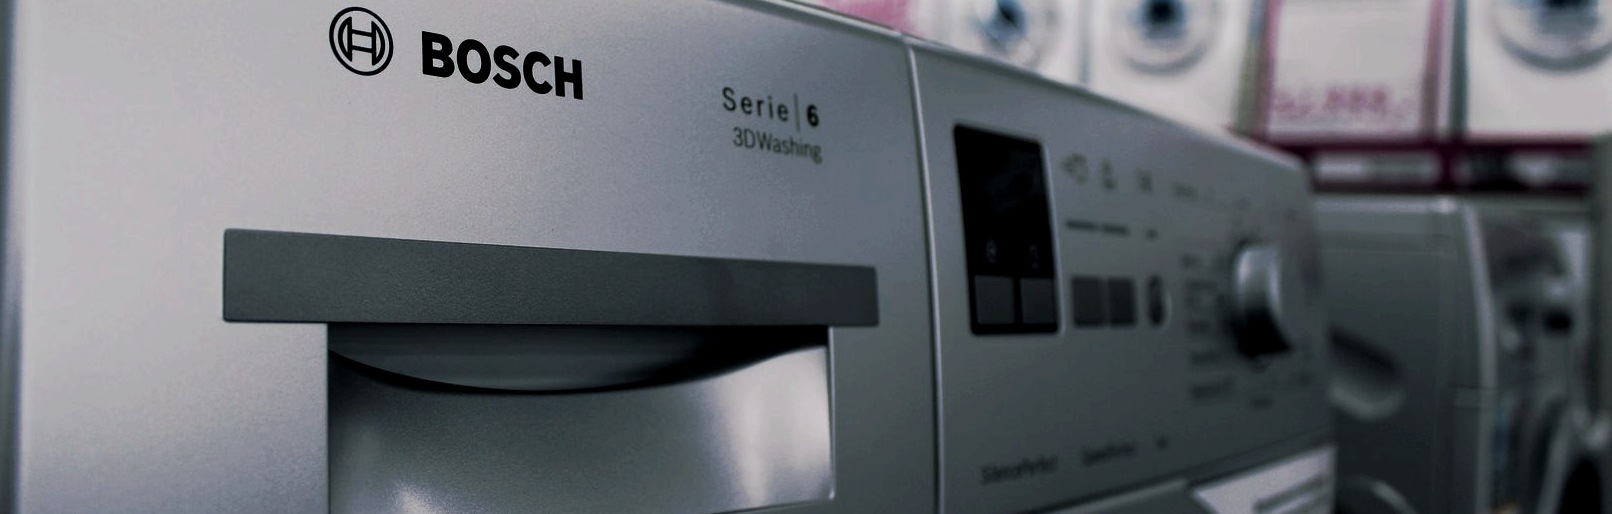 Errores, notación y métodos de solución de la lavadora Bosch